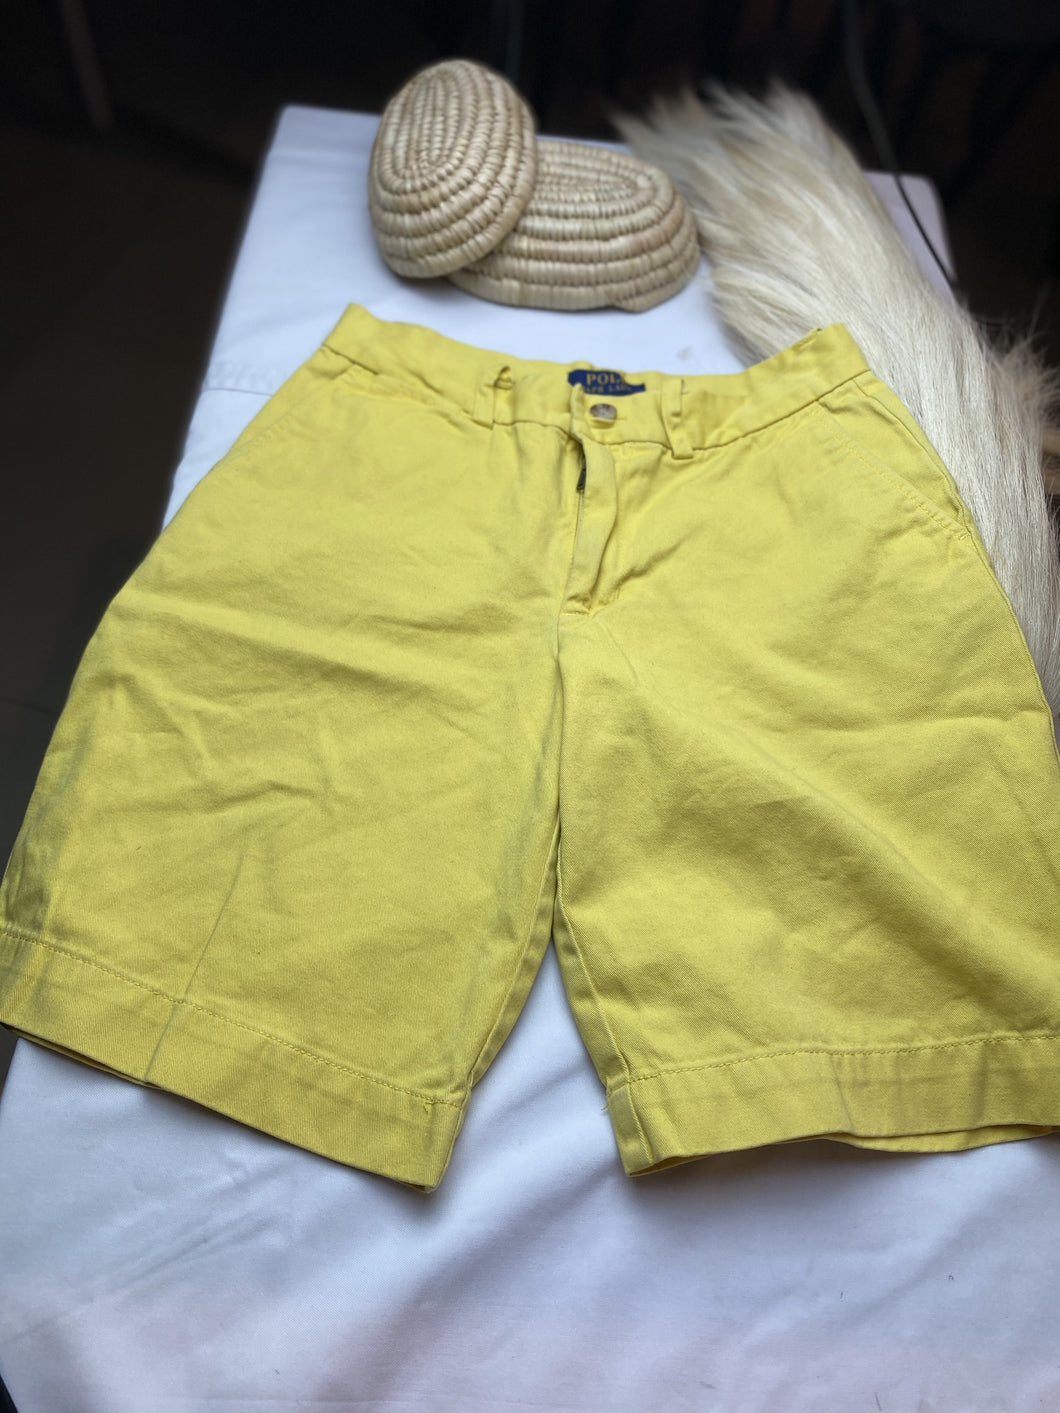 Ralph Lauren Polo Yellow Chino Shorts Boys 12 years.